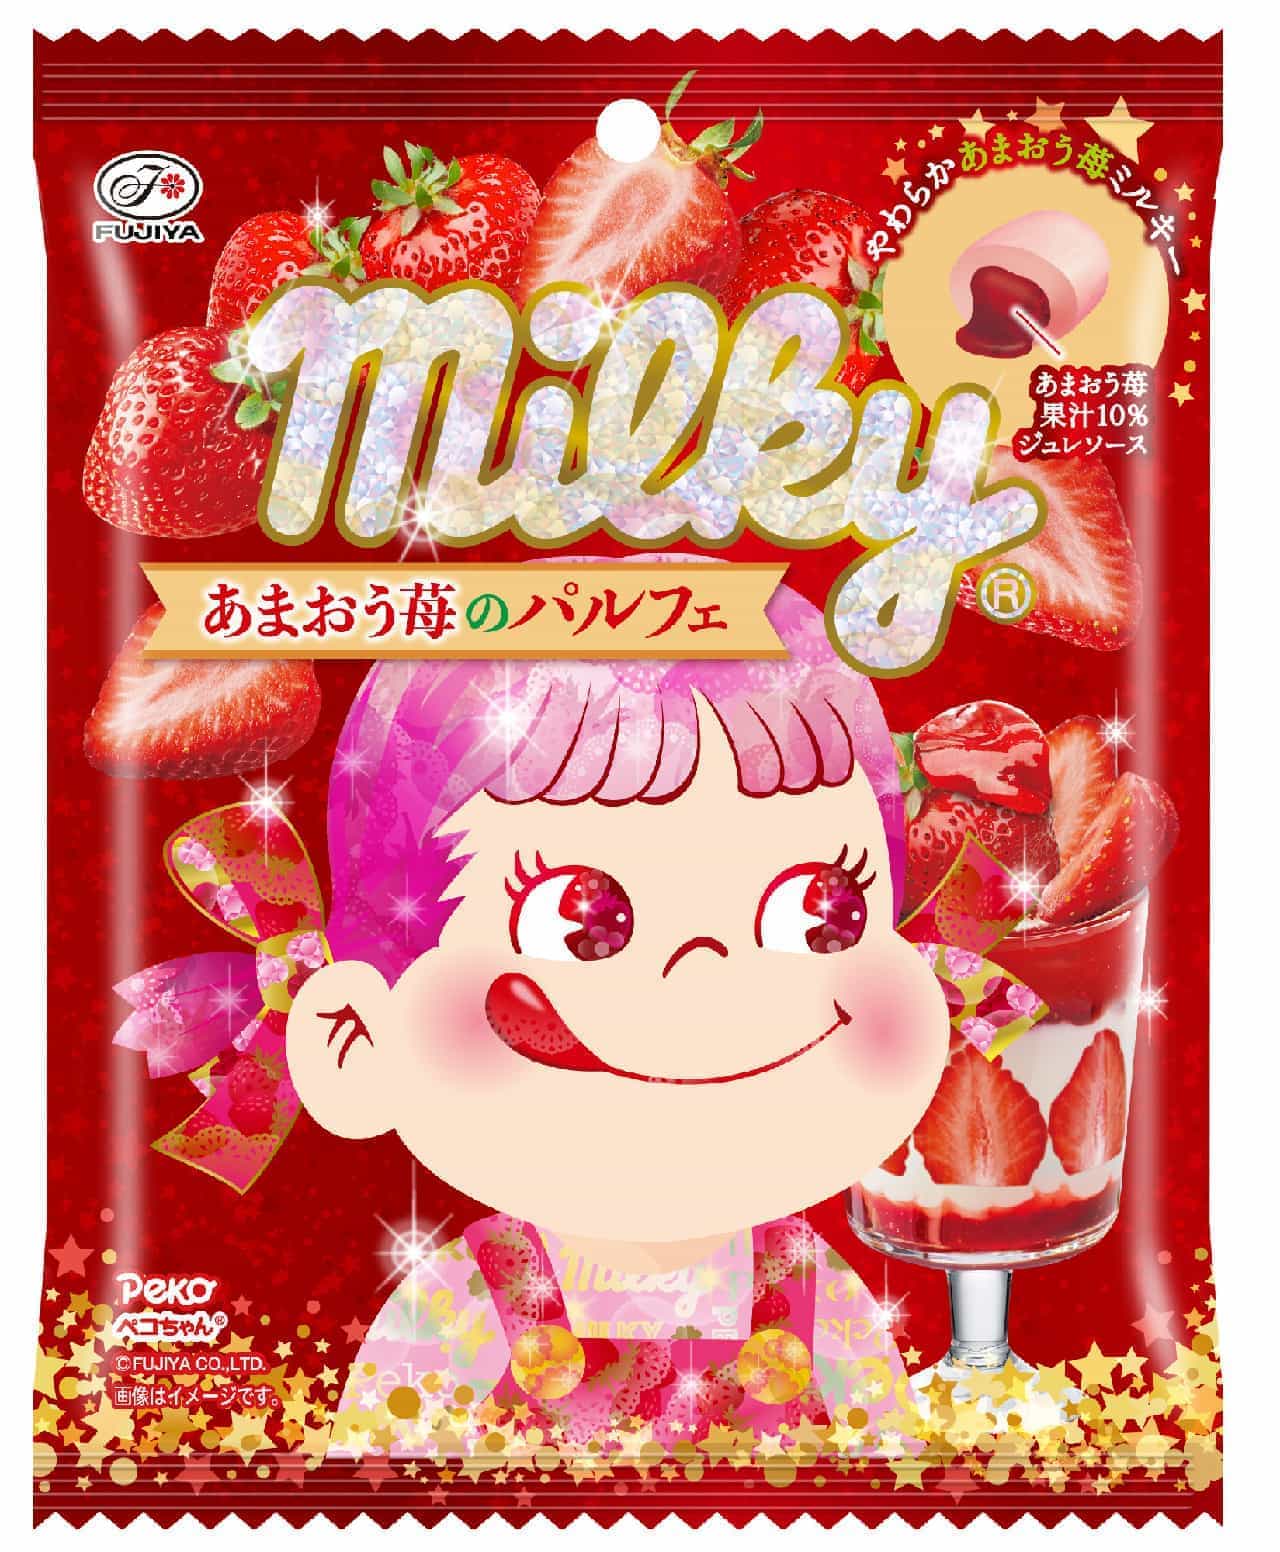 Fujiya "Milky (Amao Strawberry Parfait) Bag".